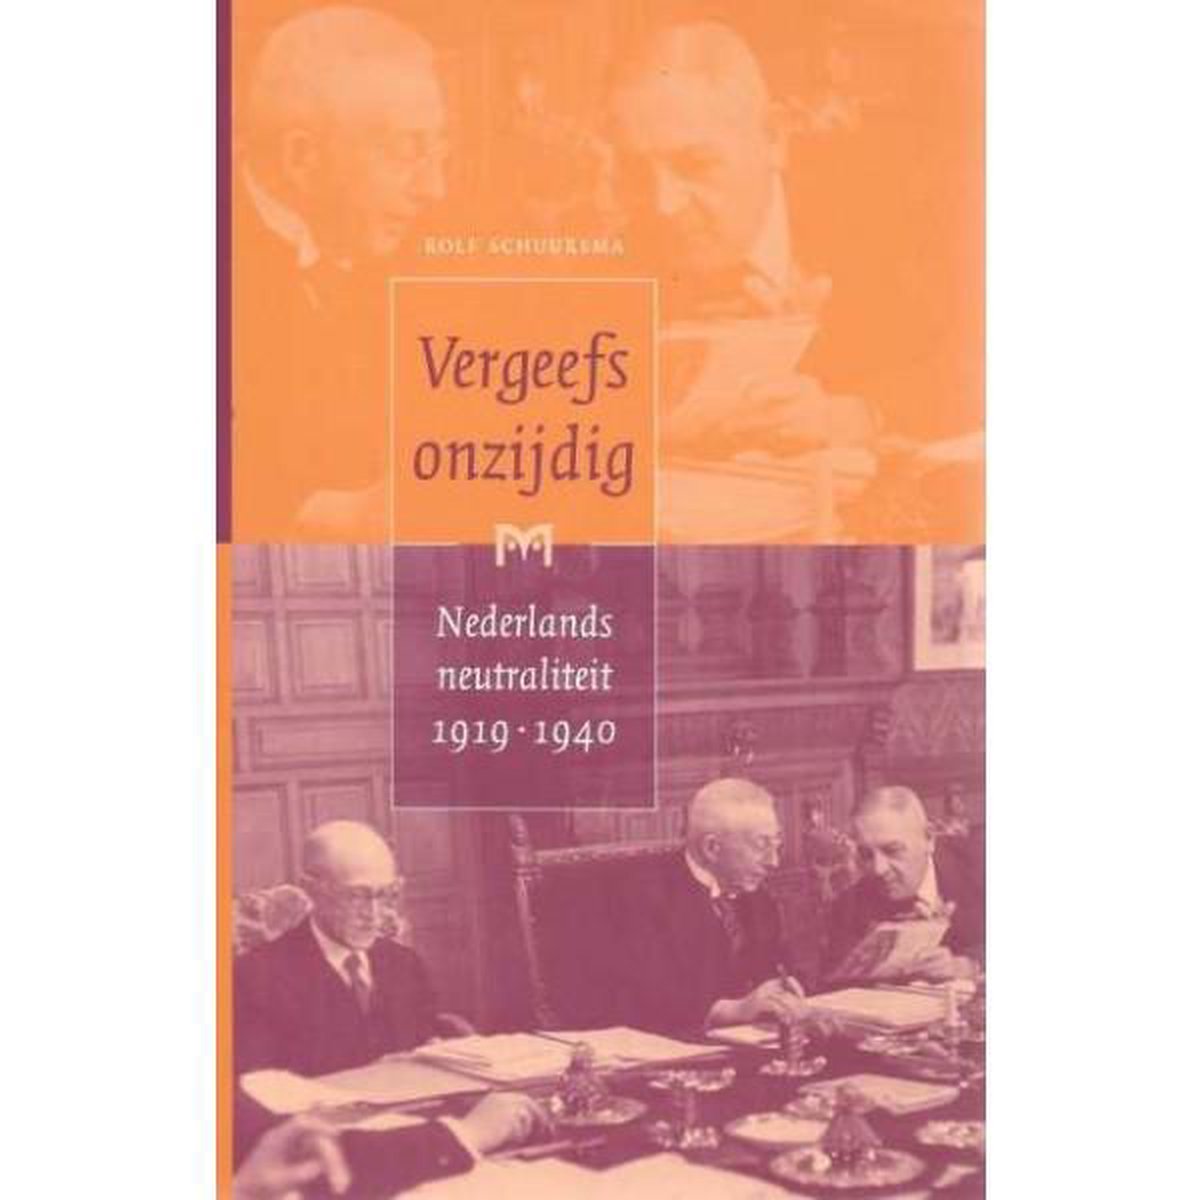 Vergeefs onzijdig. Nederlands neutraliteit 1919-1940